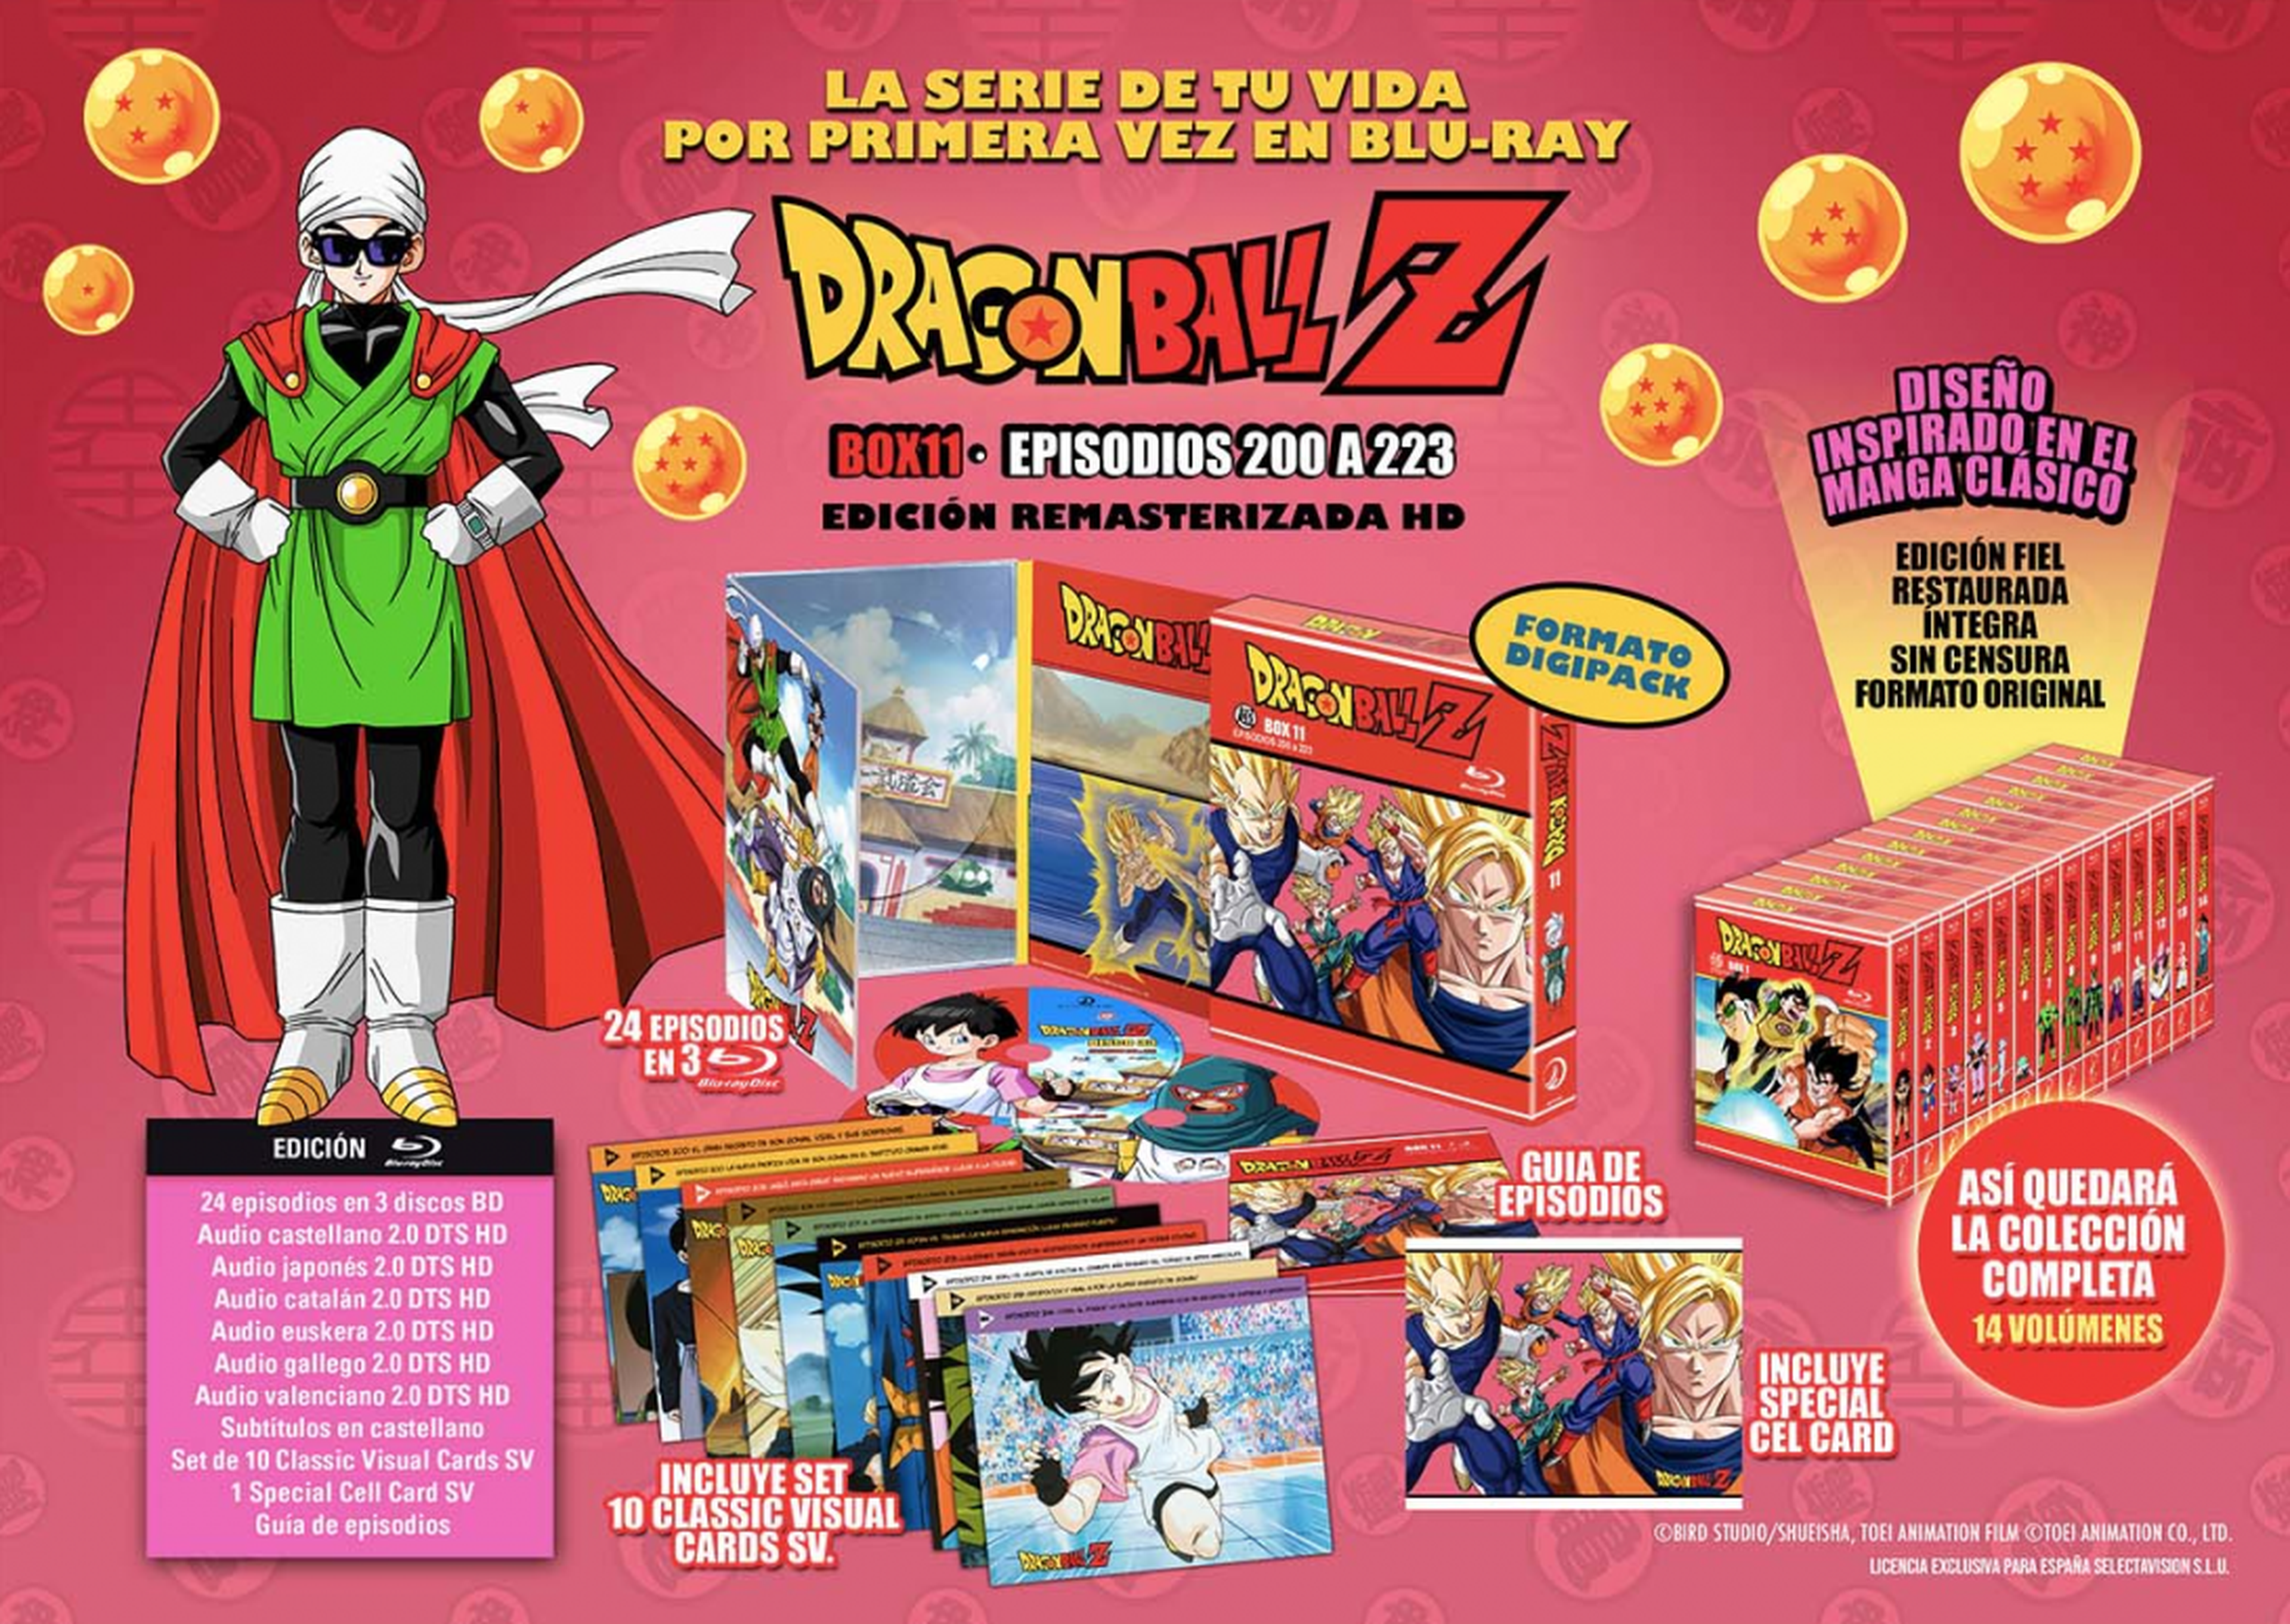 Dragon Ball Z - Portada y fecha de lanzamiento del Box 12 de la